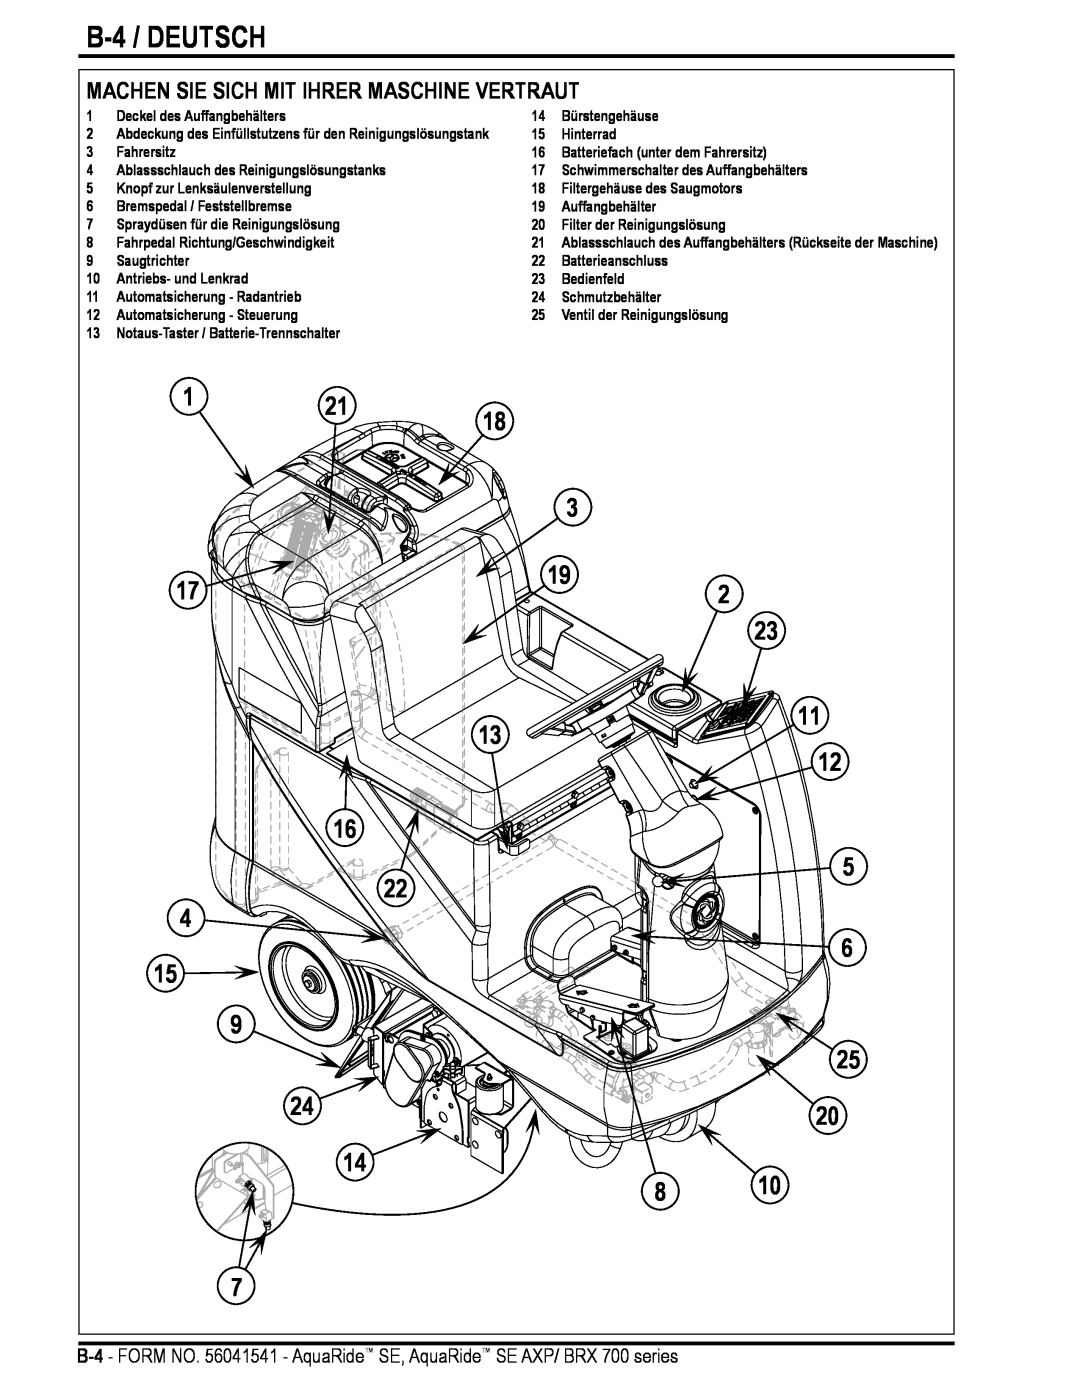 Nilfisk-Advance America BRX 700 Series manual B-4 / DEUTSCH, Machen Sie Sich Mit Ihrer Maschine Vertraut 